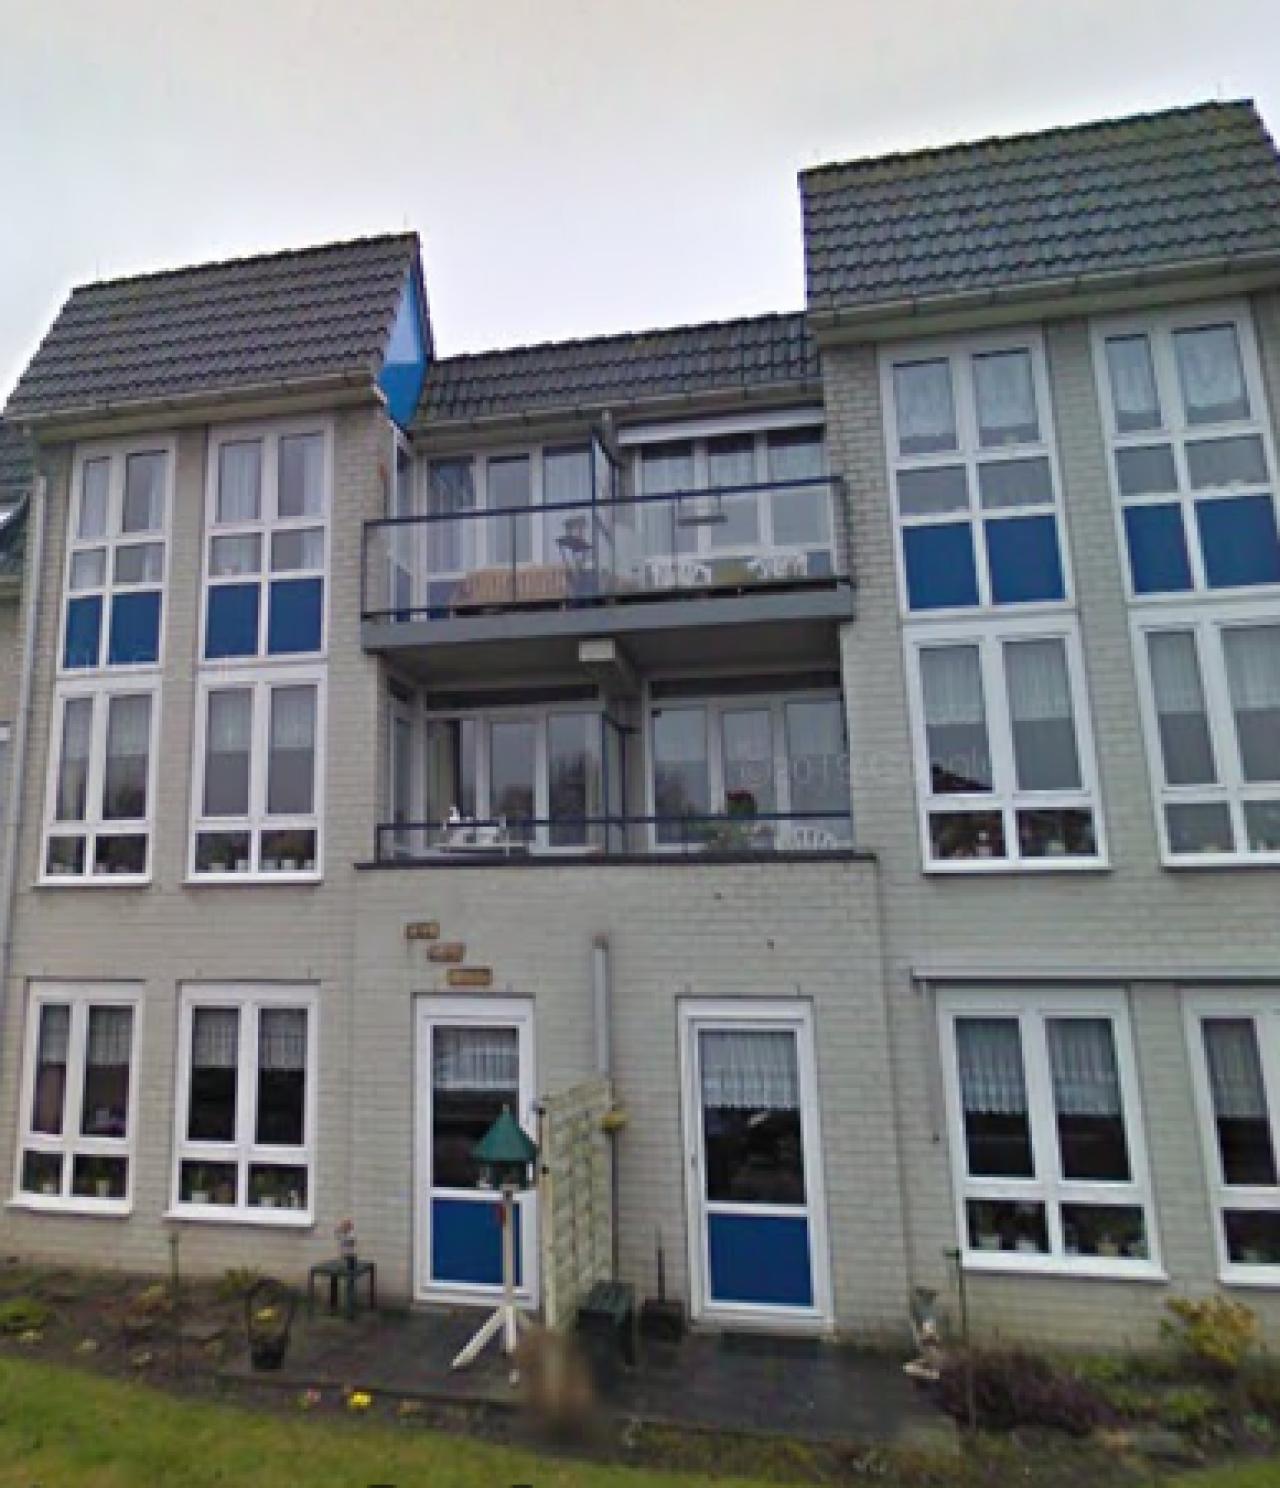 Sint Lucasstraat 57, 1606 BR Venhuizen, Nederland